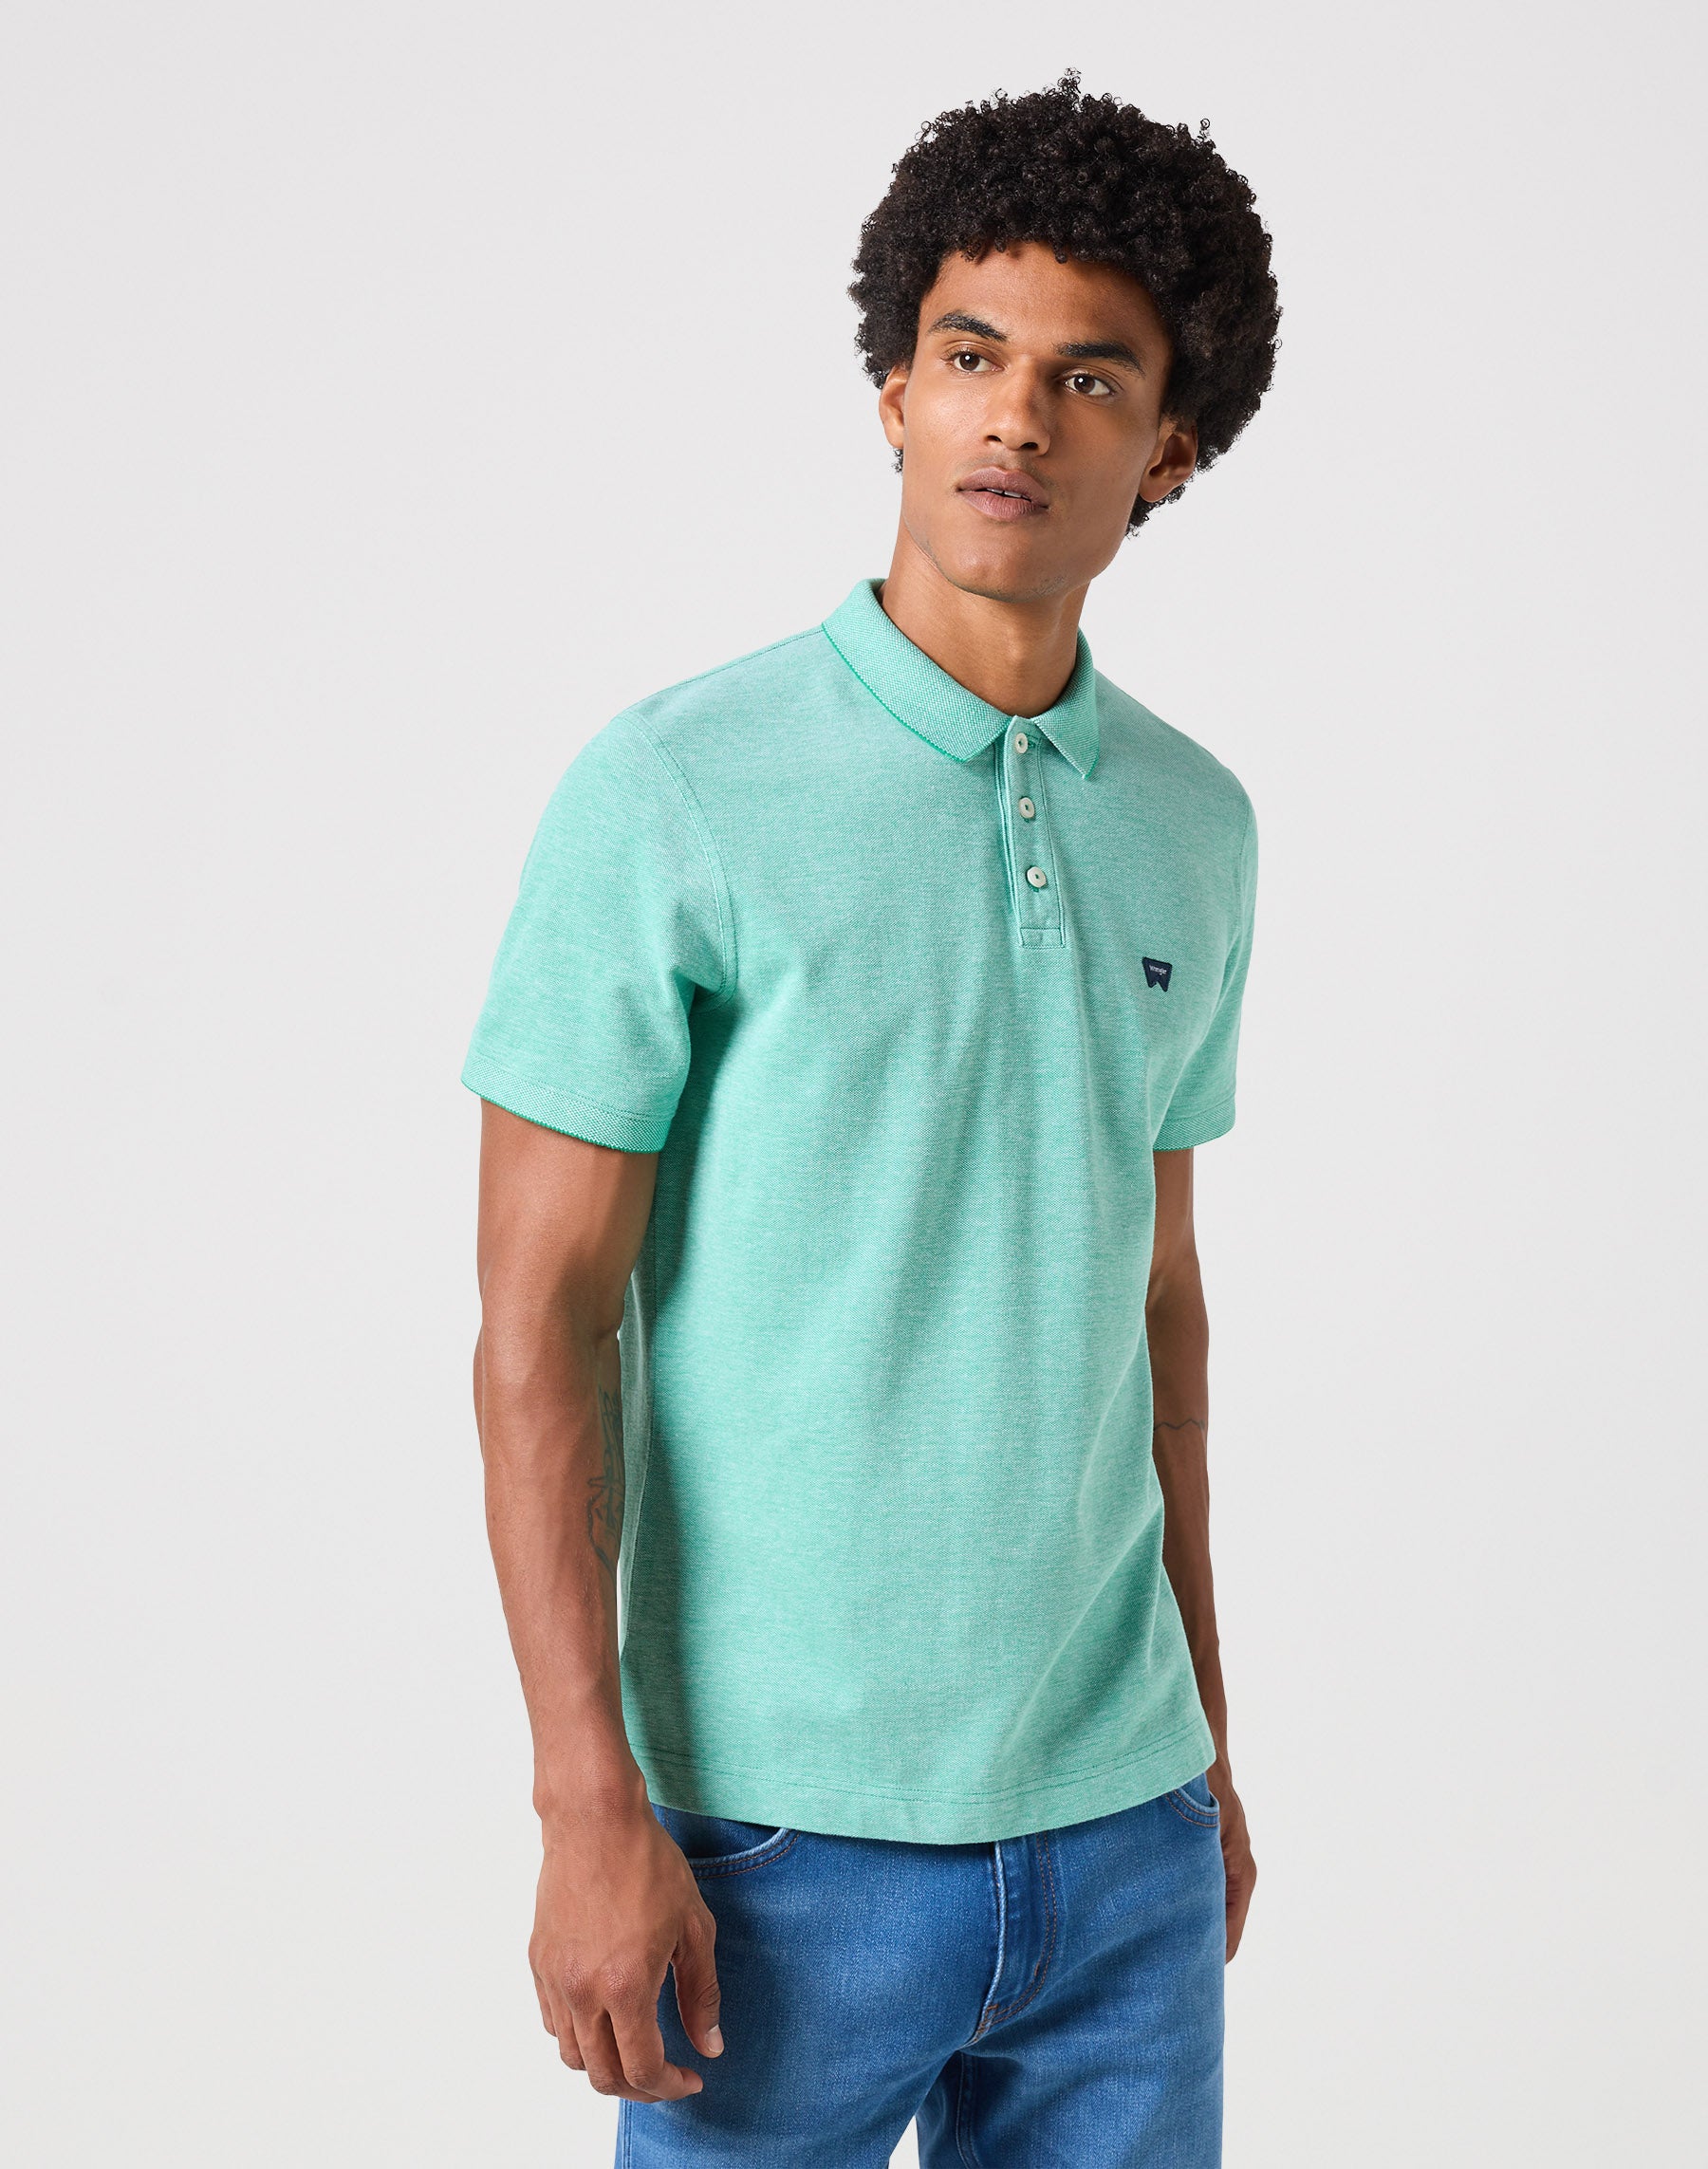 Refined Polo Shirt in Green Polos Wrangler   